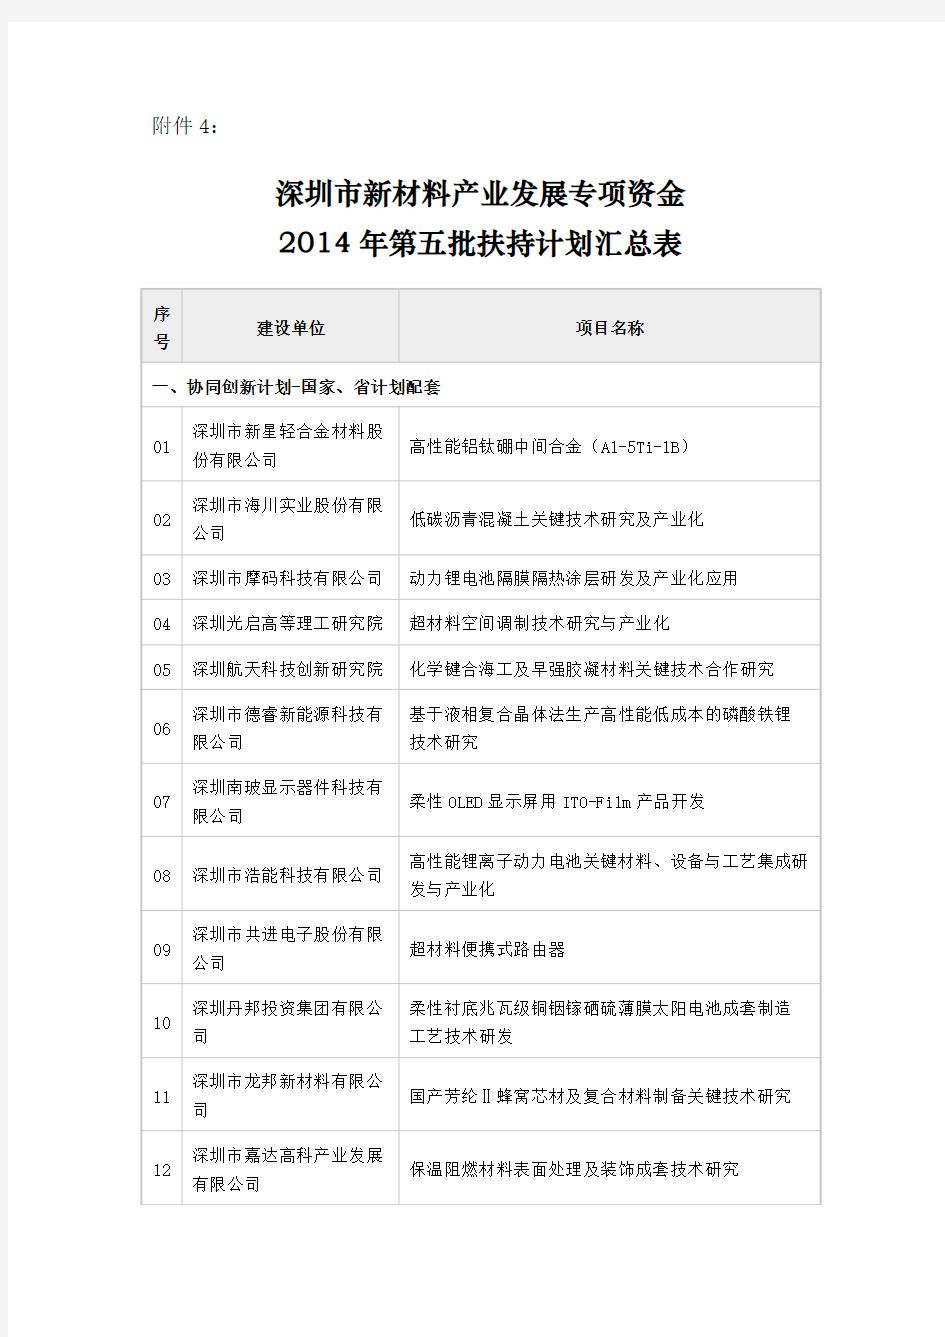 深圳市新材料产业发展专项资金--2014年第五批扶持计划汇总表